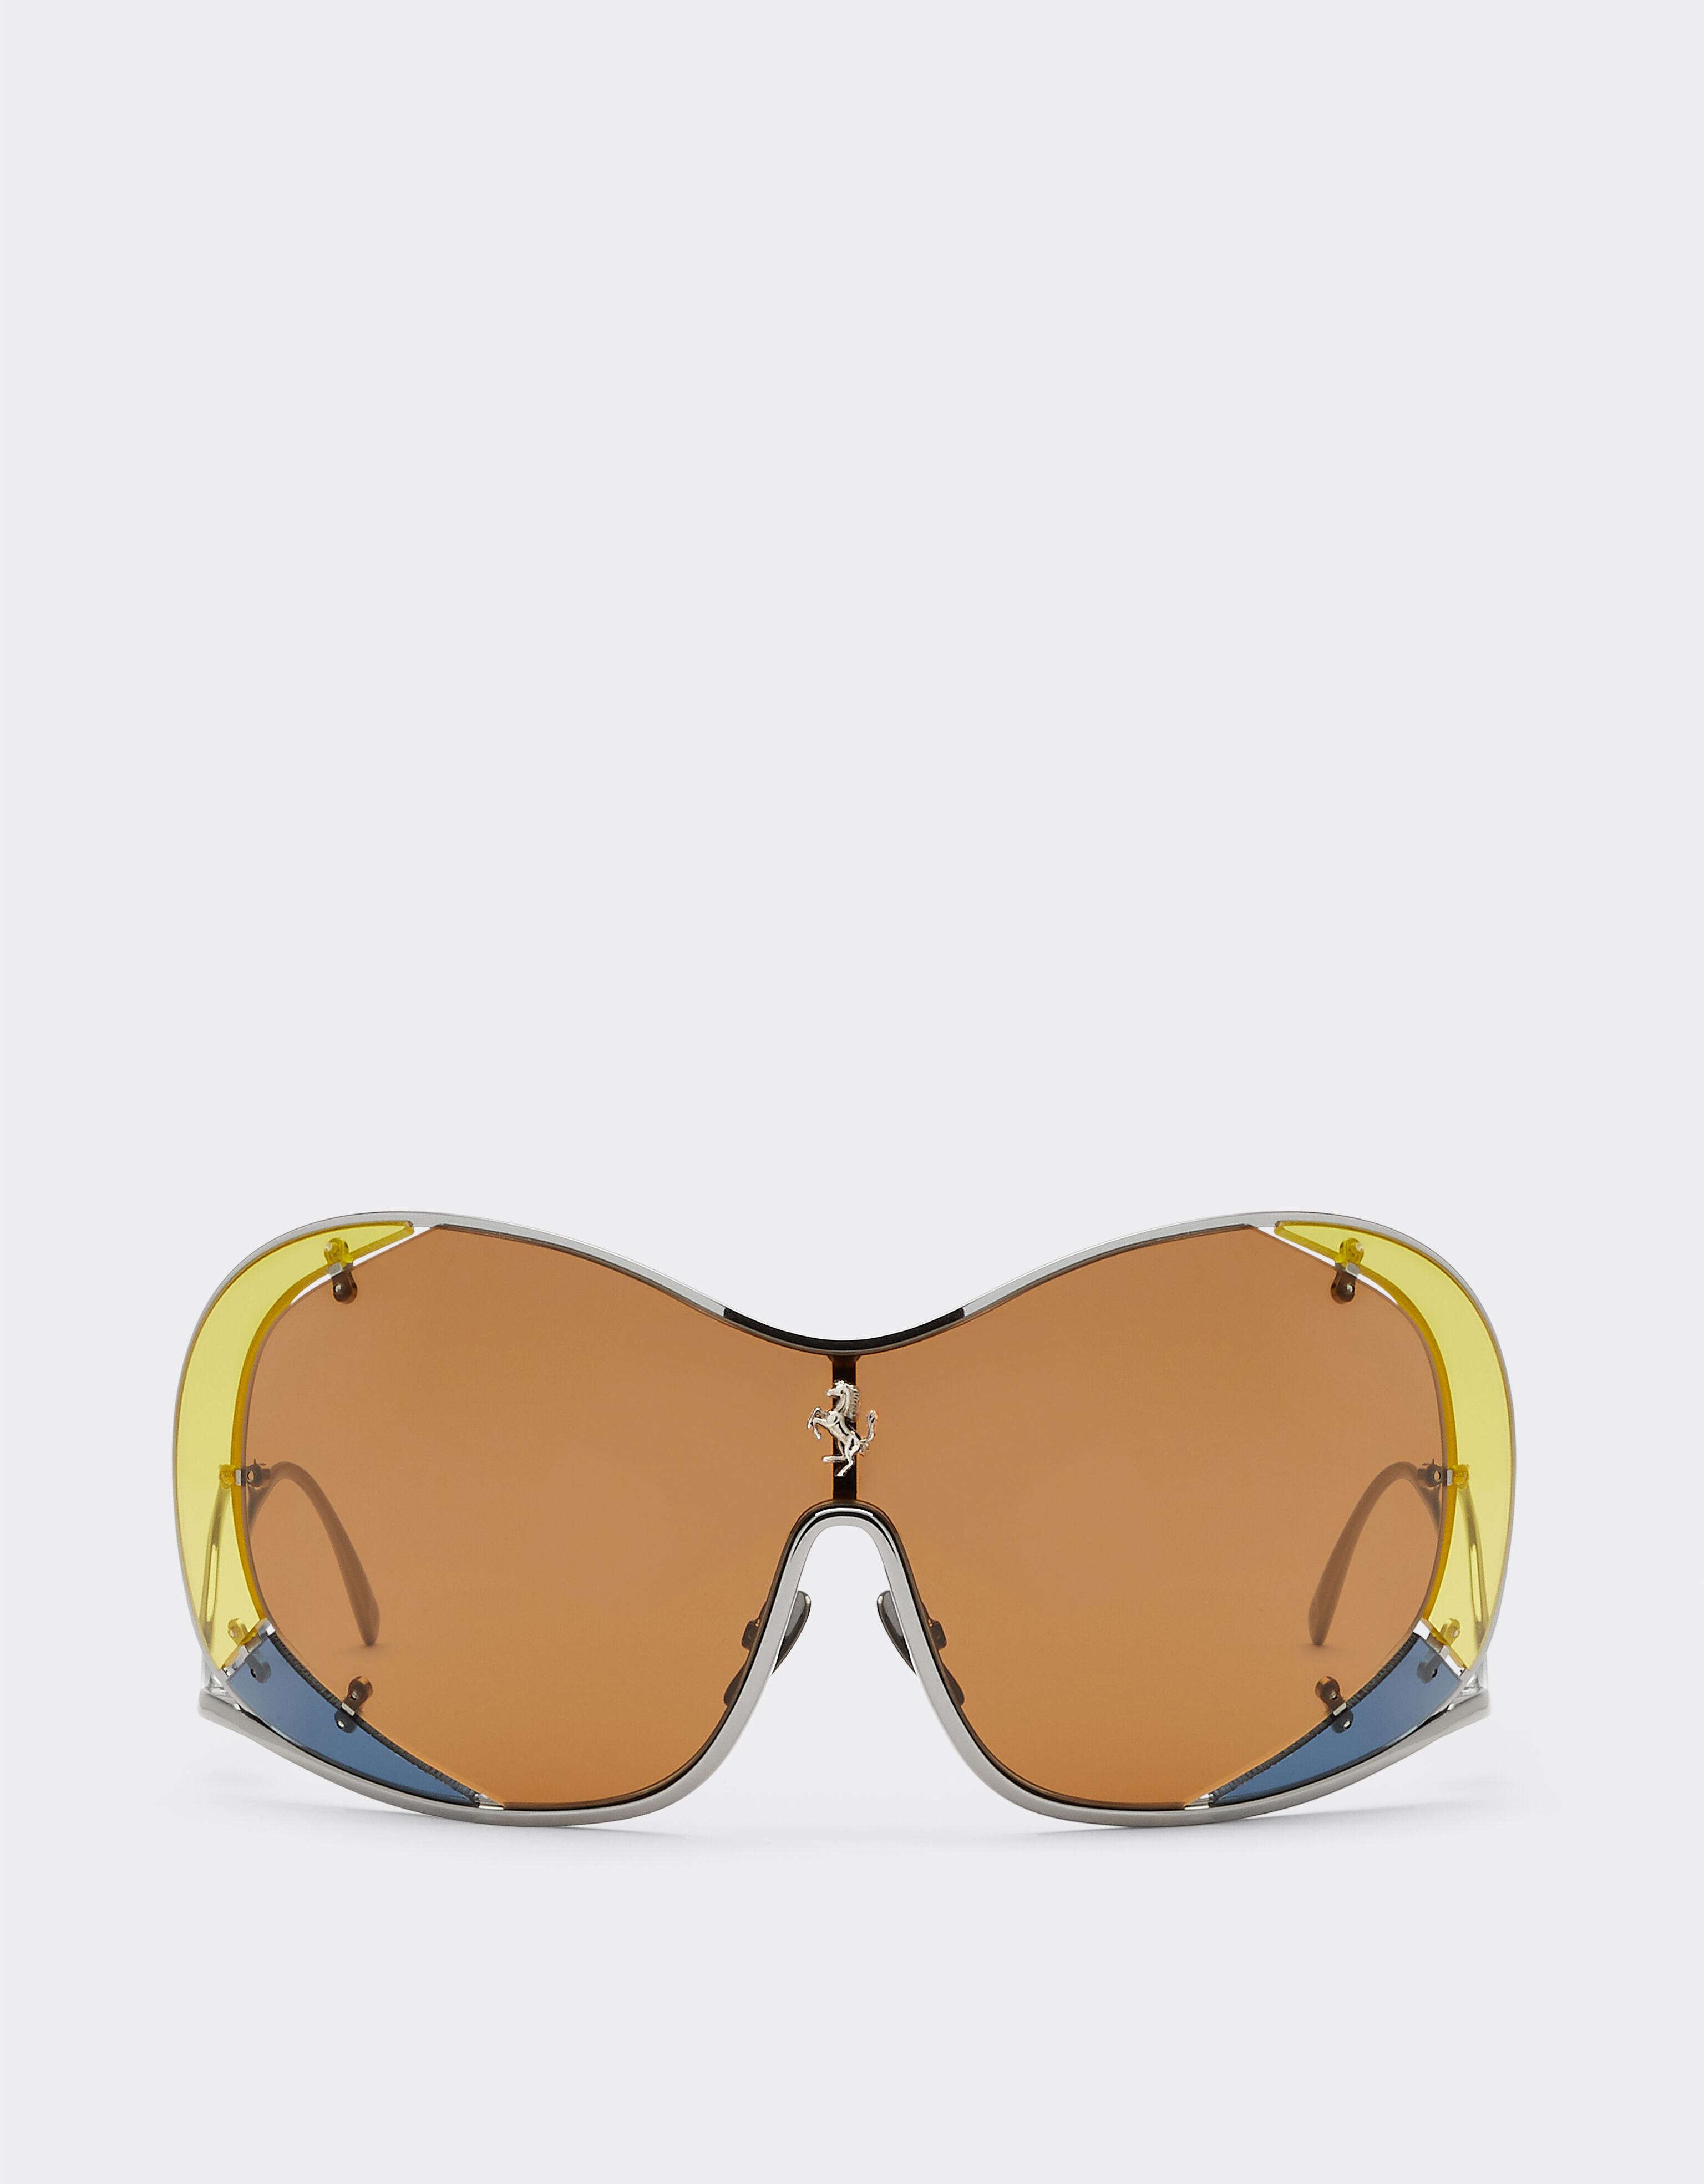 Ferrari Ferrari sunglasses with brown lenses Silver F1247f